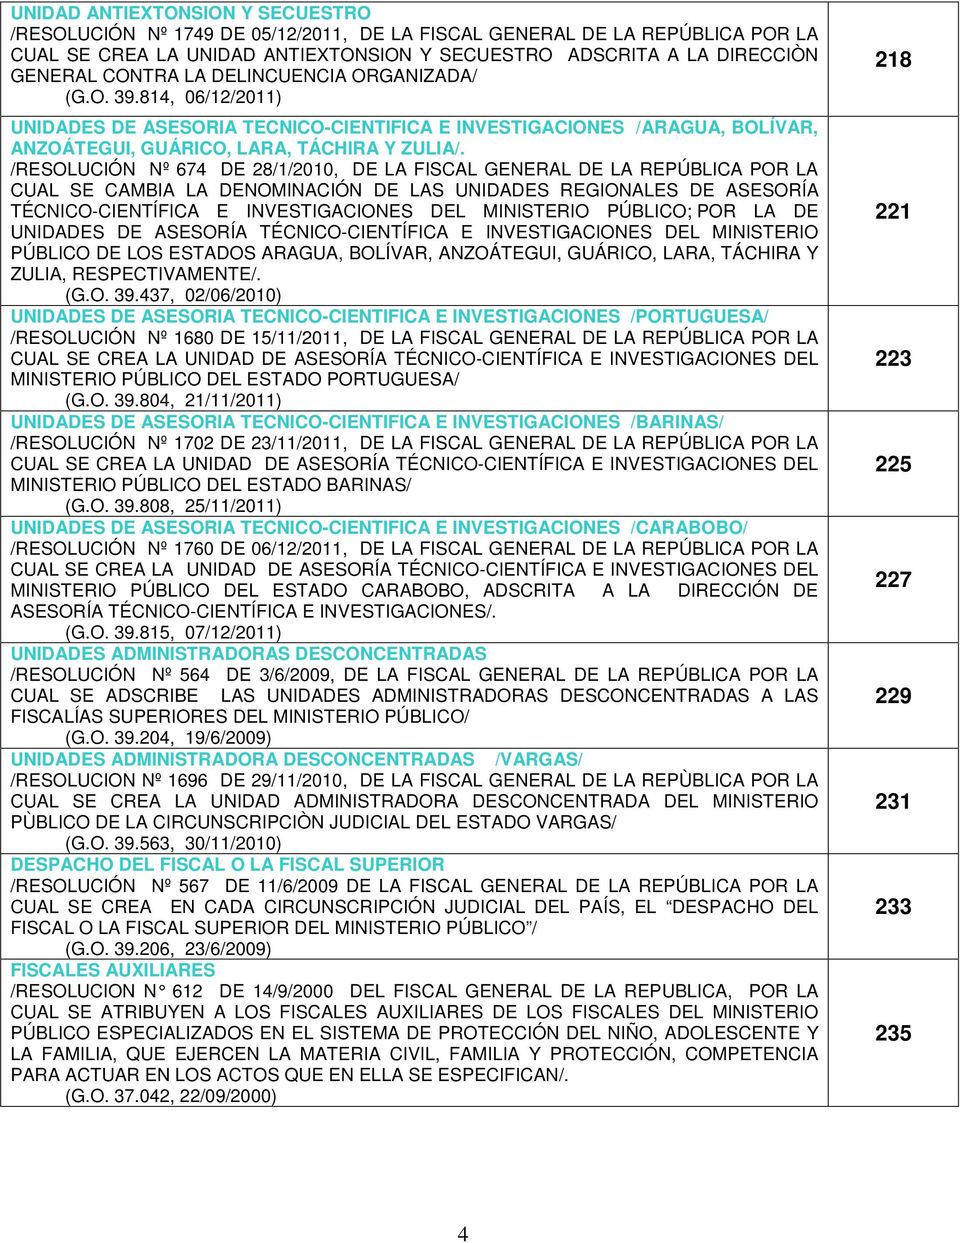 /RESOLUCIÓN Nº 674 DE 28/1/2010, DE LA FISCAL GENERAL DE LA REPÚBLICA POR LA CUAL SE CAMBIA LA DENOMINACIÓN DE LAS UNIDADES REGIONALES DE ASESORÍA TÉCNICO-CIENTÍFICA E INVESTIGACIONES DEL MINISTERIO